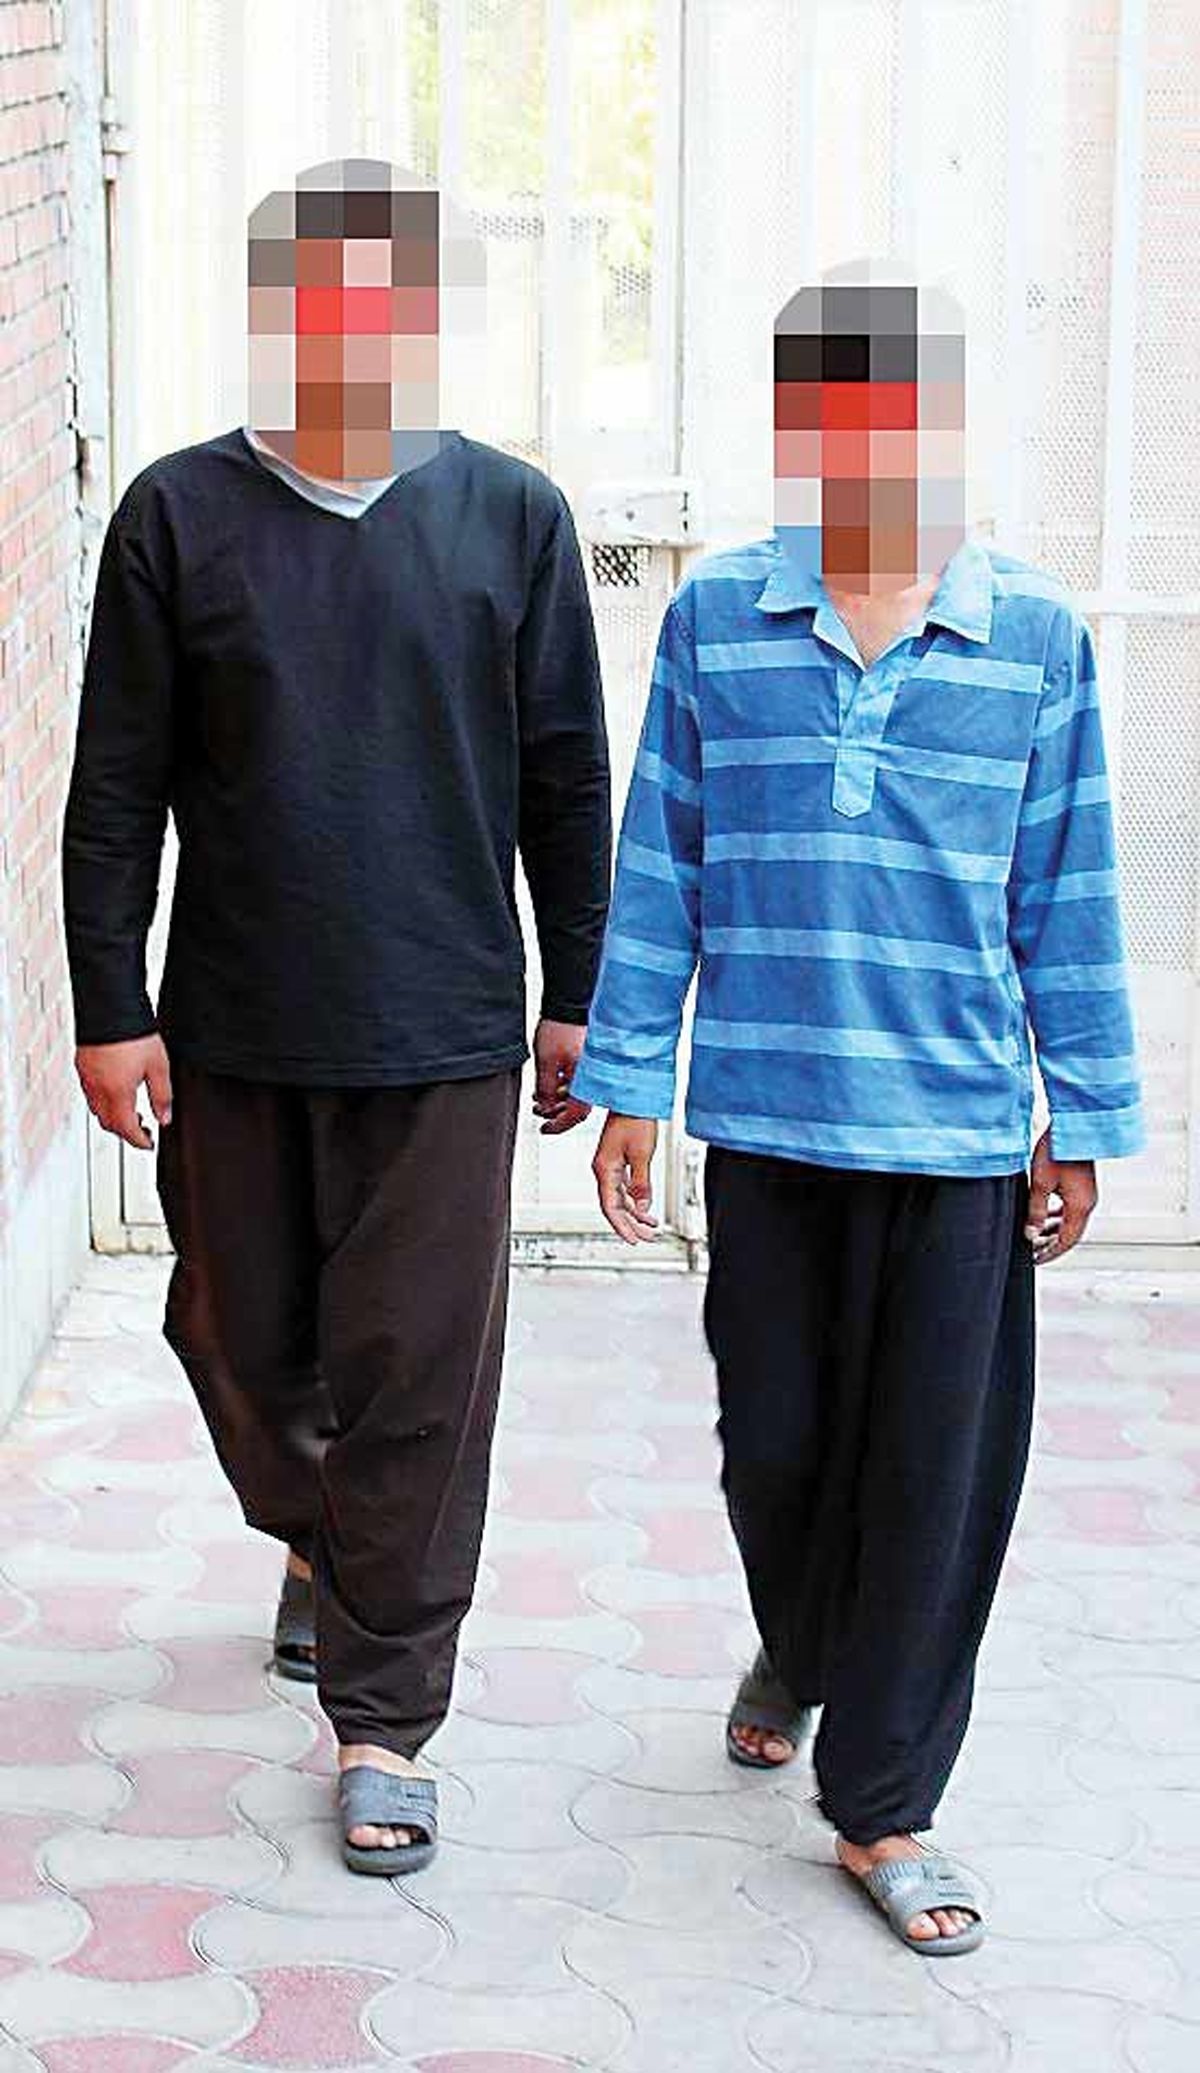 قتل به سبک داعشی ها در مه ولات / دفن جسد سلاخی شده پسر جوان در بیابان